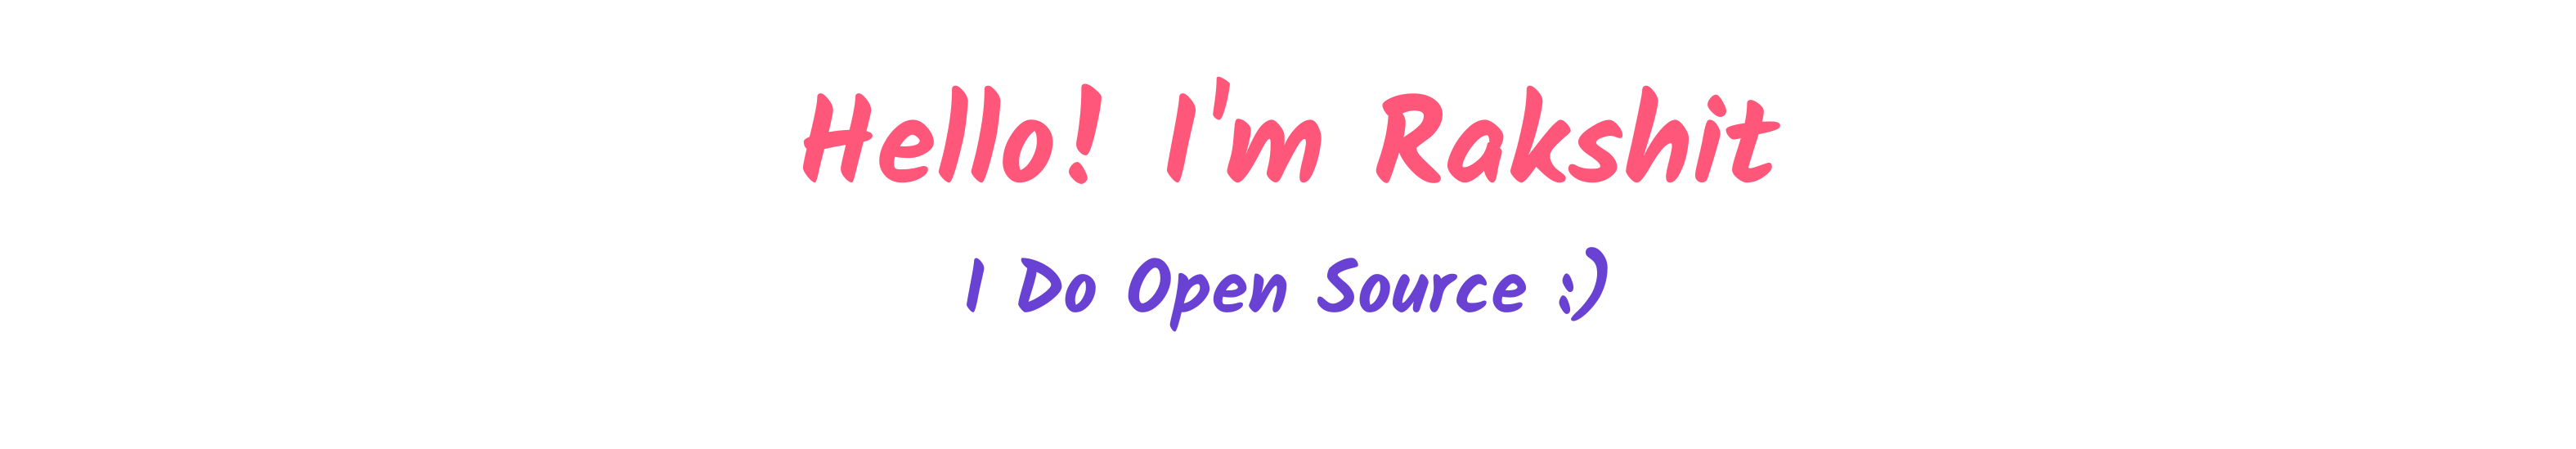 Hello, I'm Rakshit. I do open source!